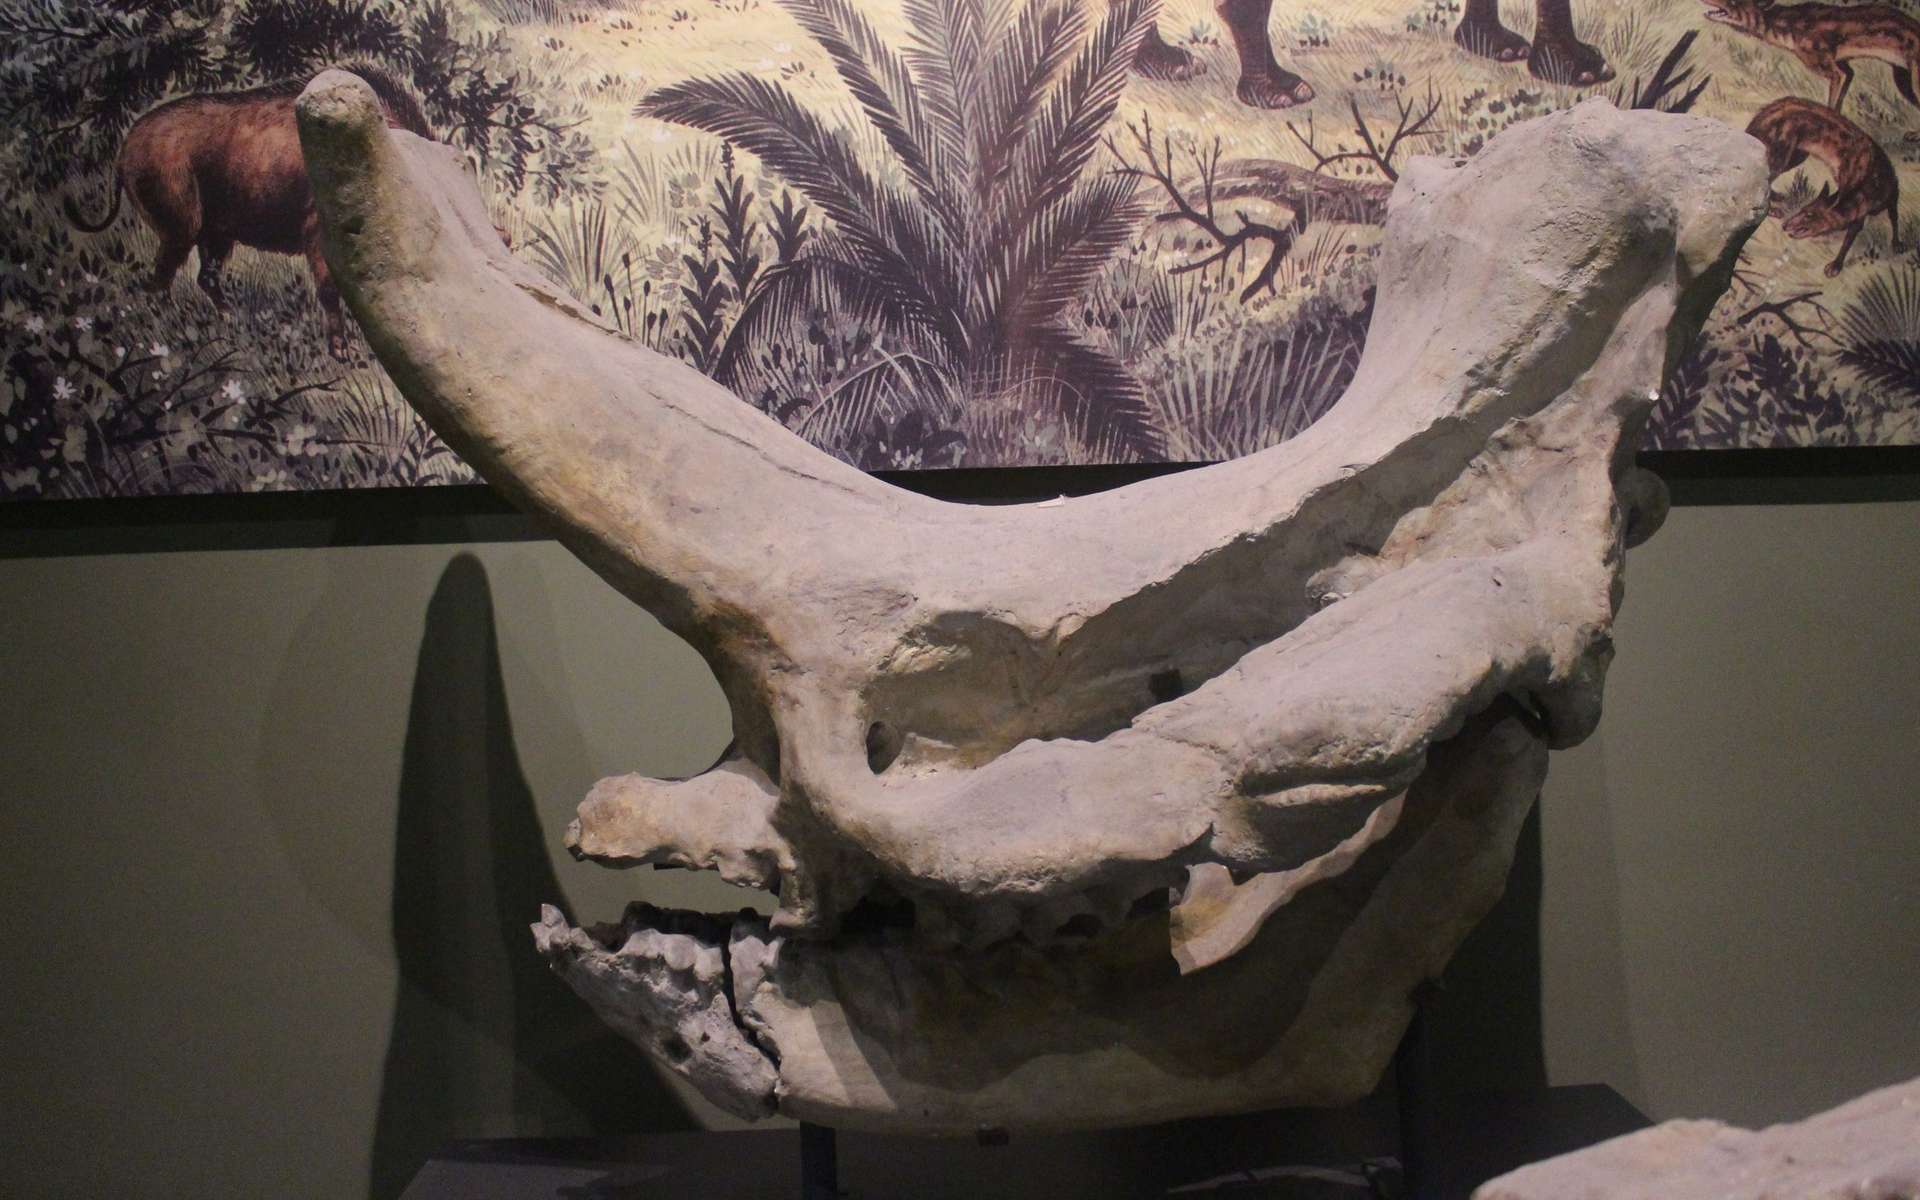 Crâne d'Embolotherium, l'un des mammifères d'origine asiatique ayant colonisé précocement l'Europe. © Jonathan Chen, Wikimedia Commons, CC by-sa 4.0